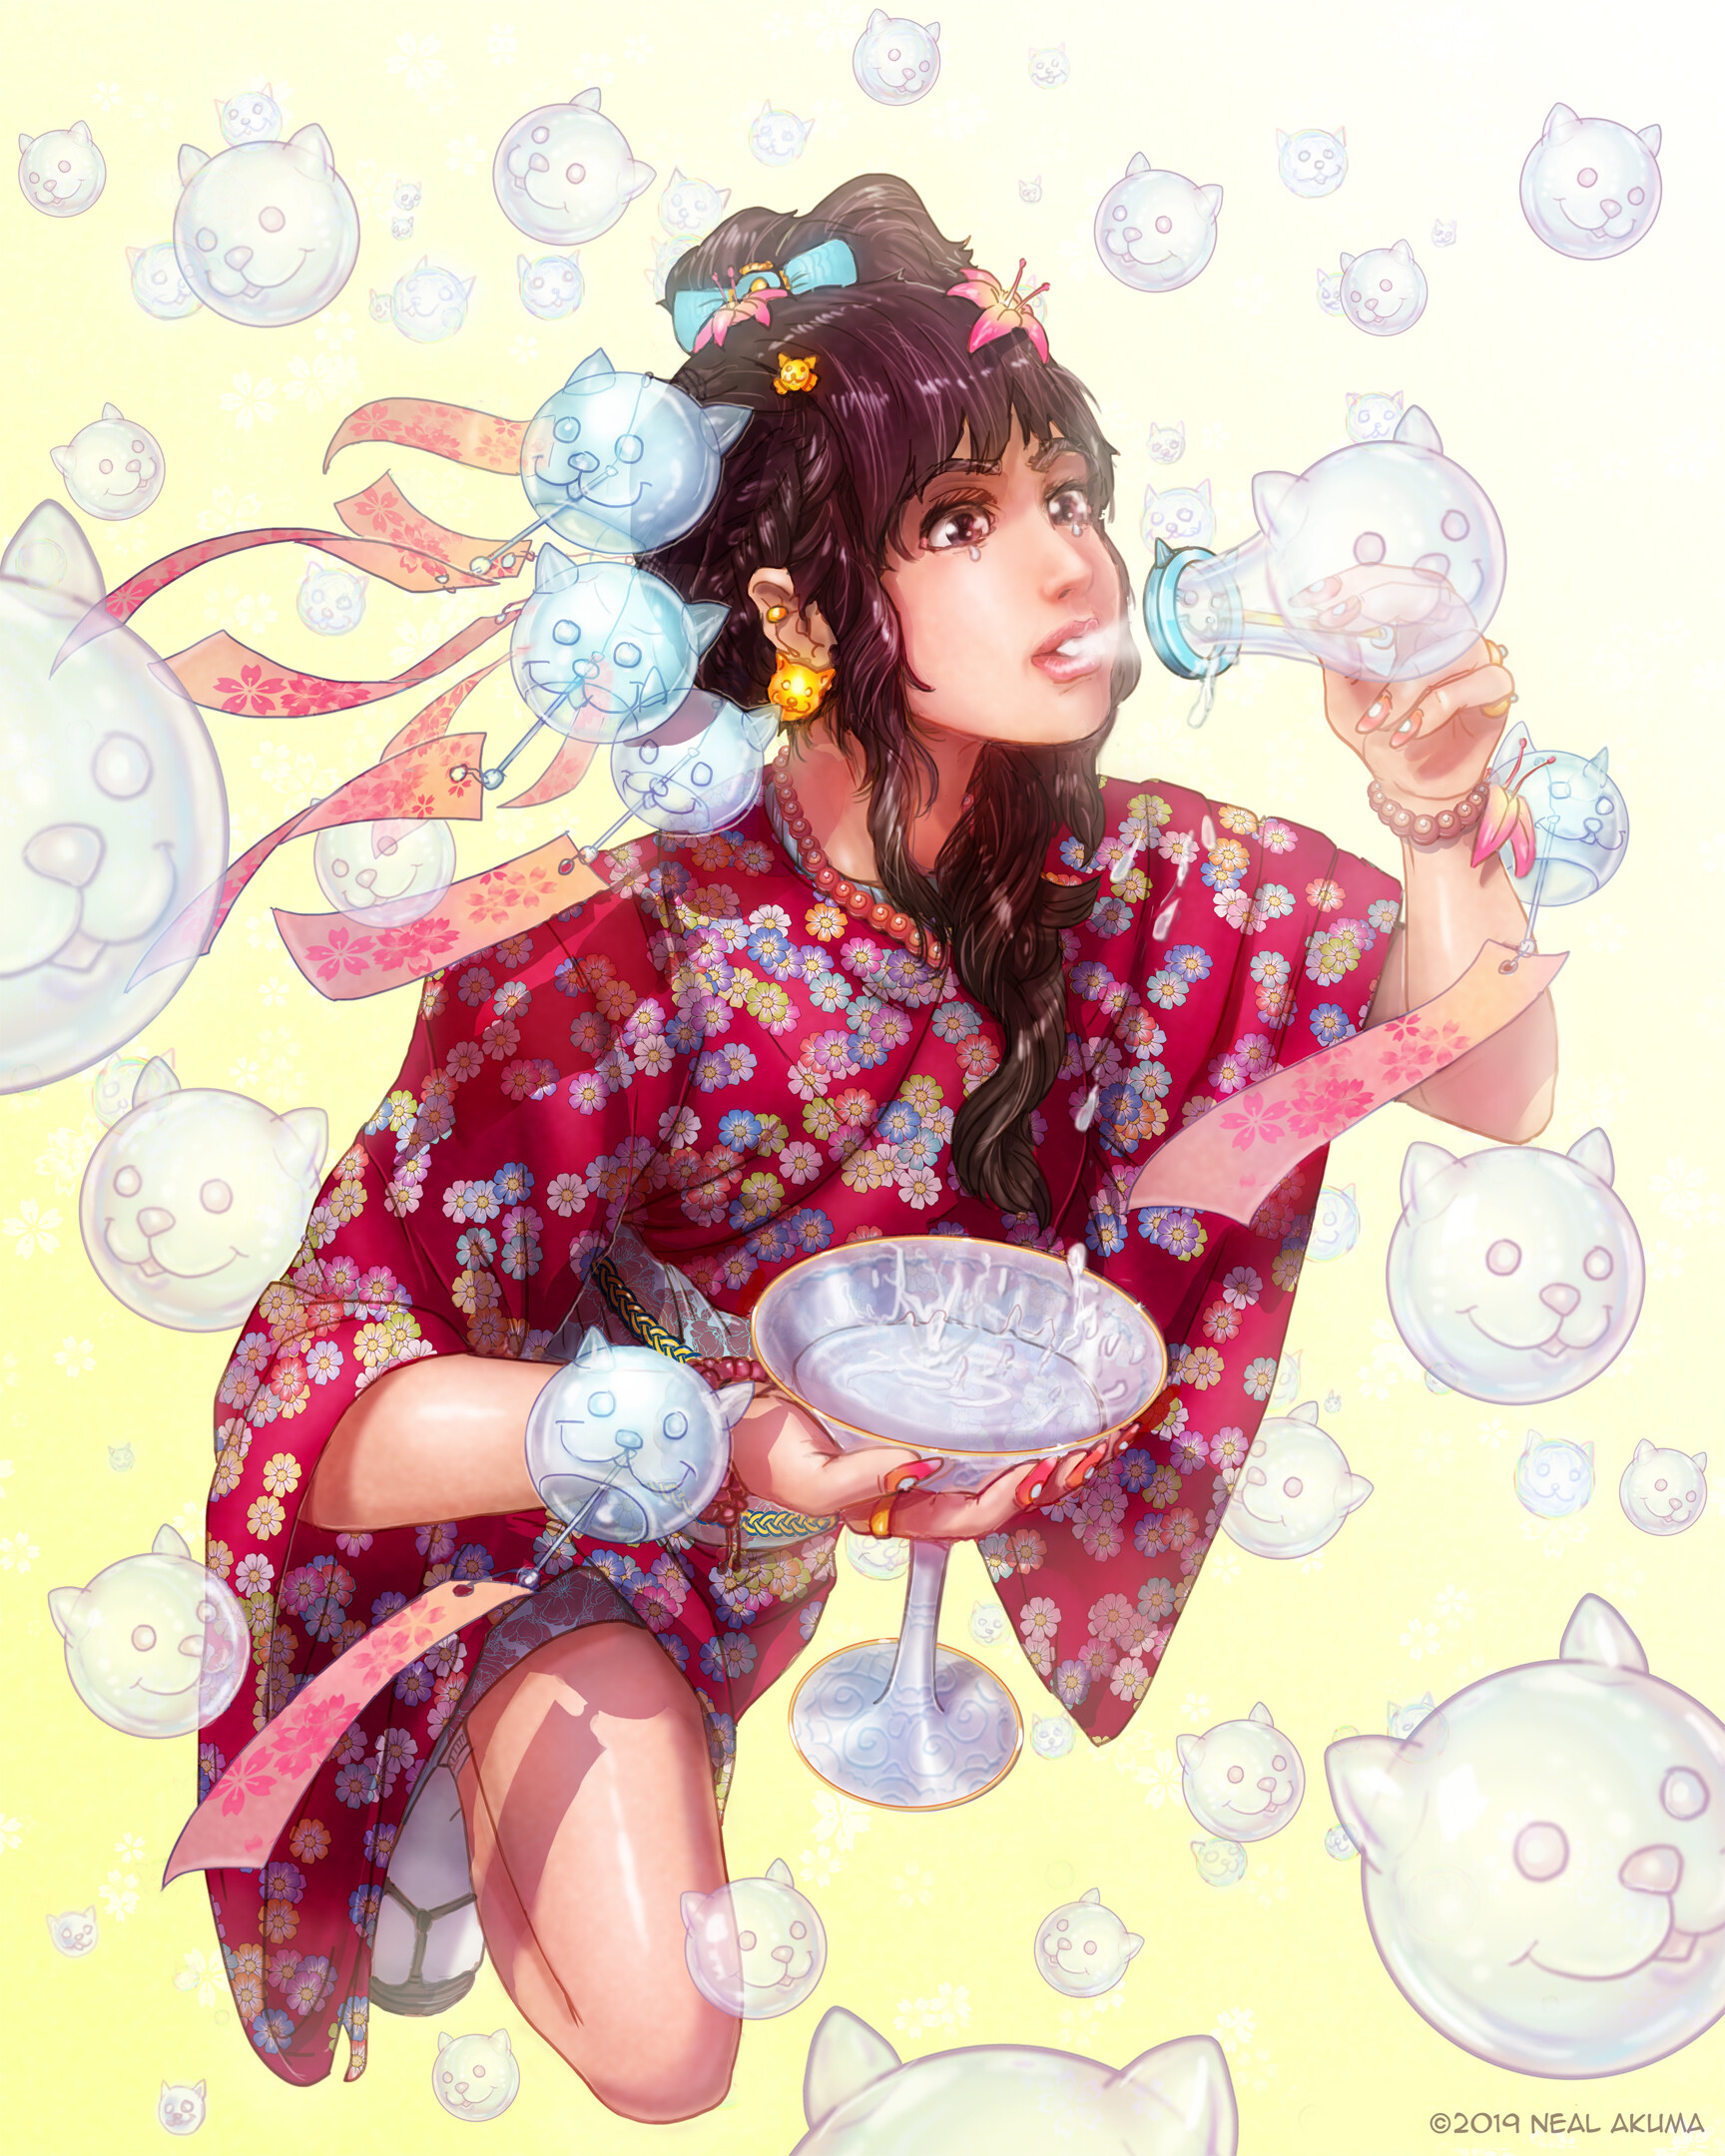 neal-akuma-edo-furin-cat-bubbles.jpg